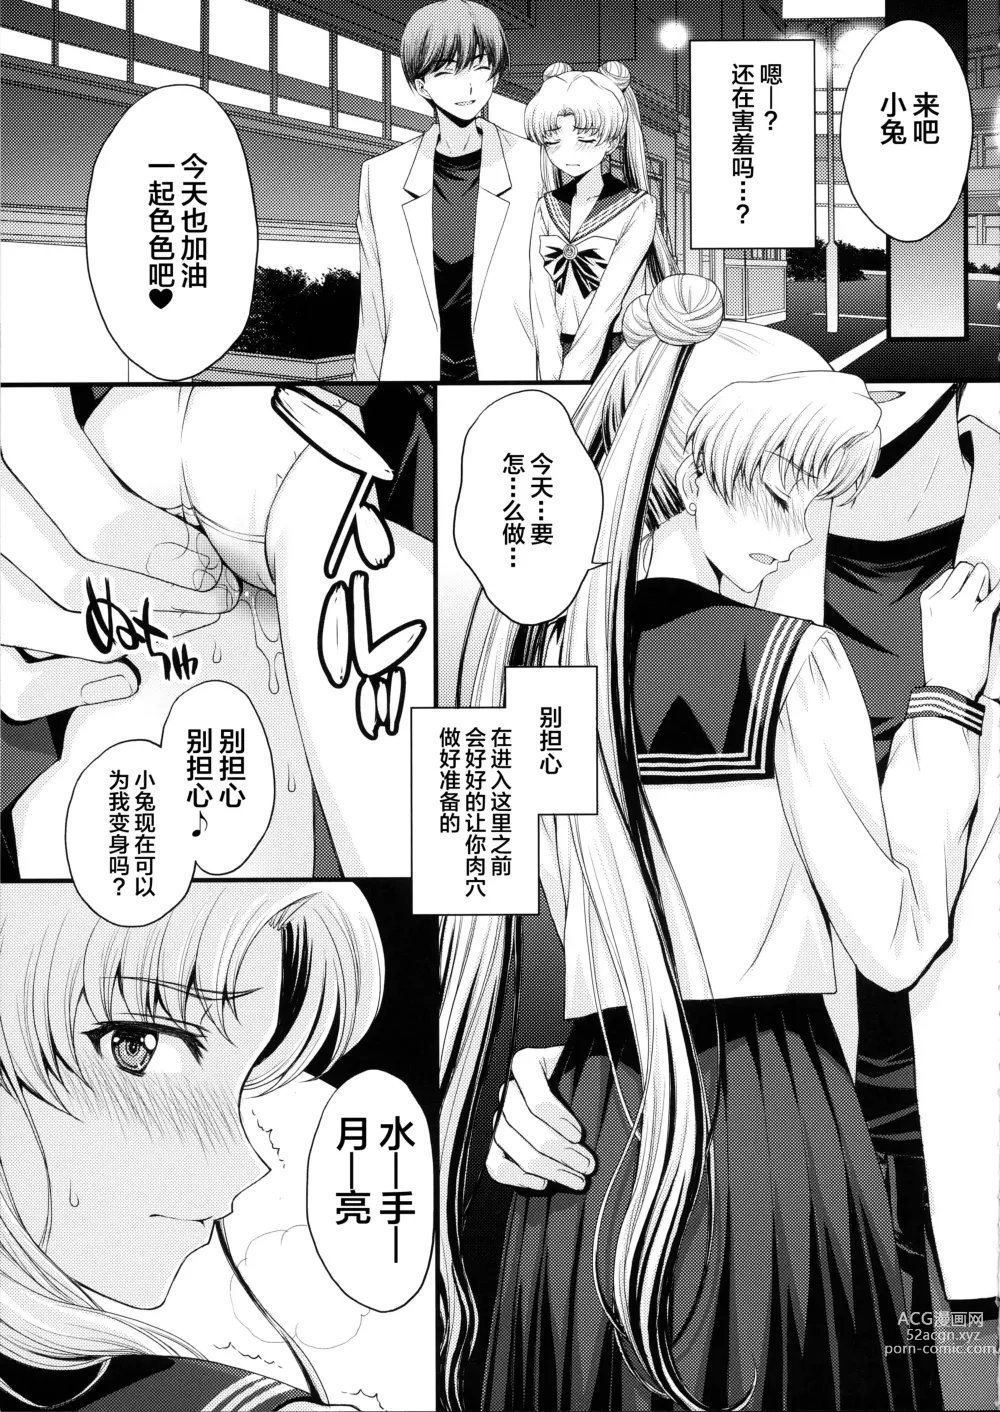 Page 6 of doujinshi Usagi no Junjou!? Chin Make Bishoujo Senshi!